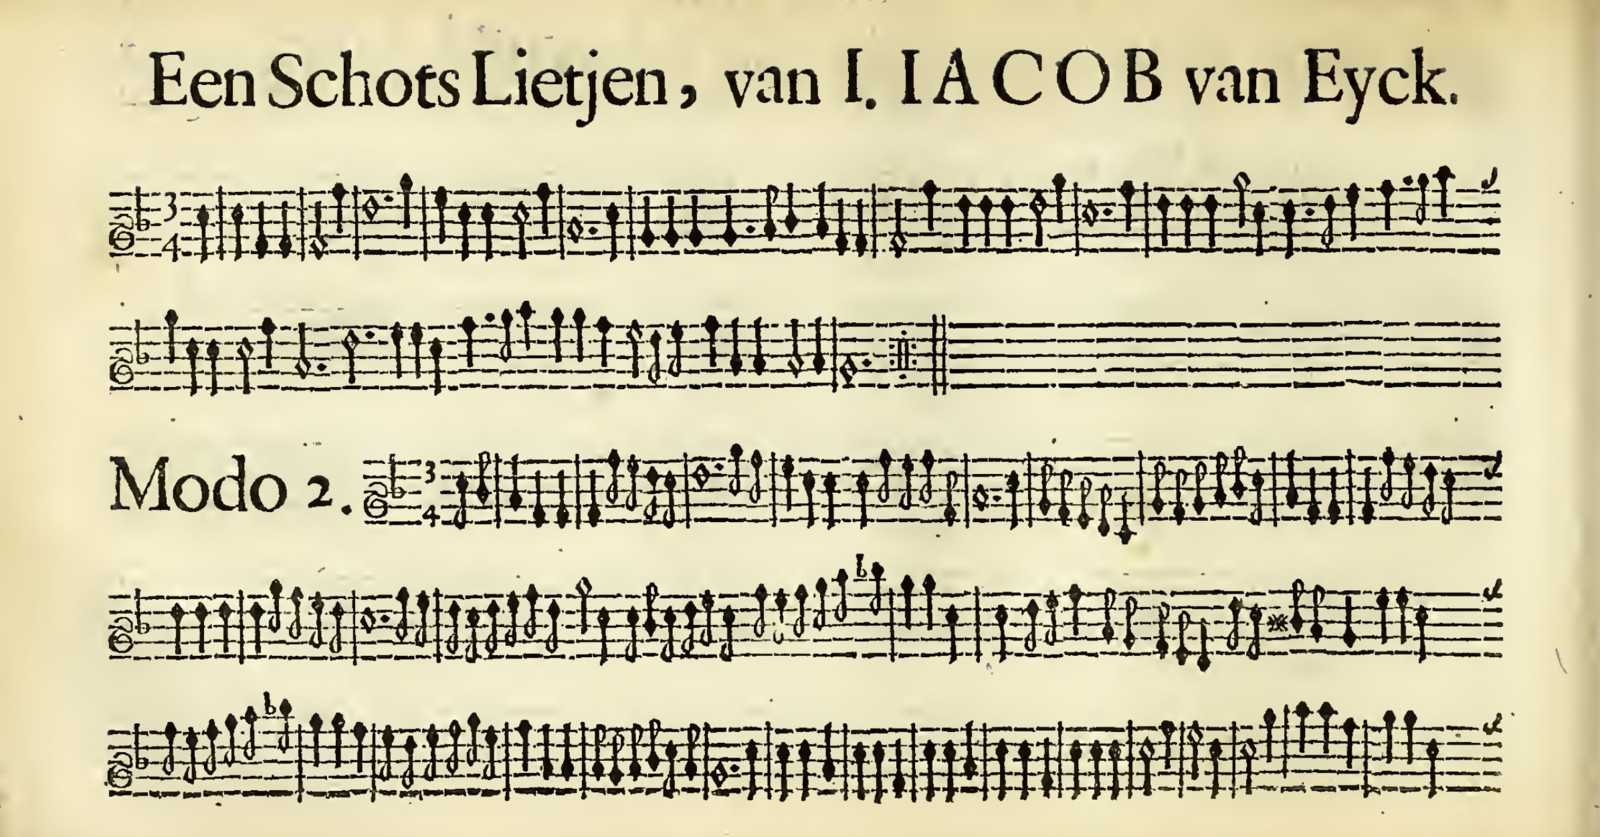 Schots lietjen van Jacob van Eyck.